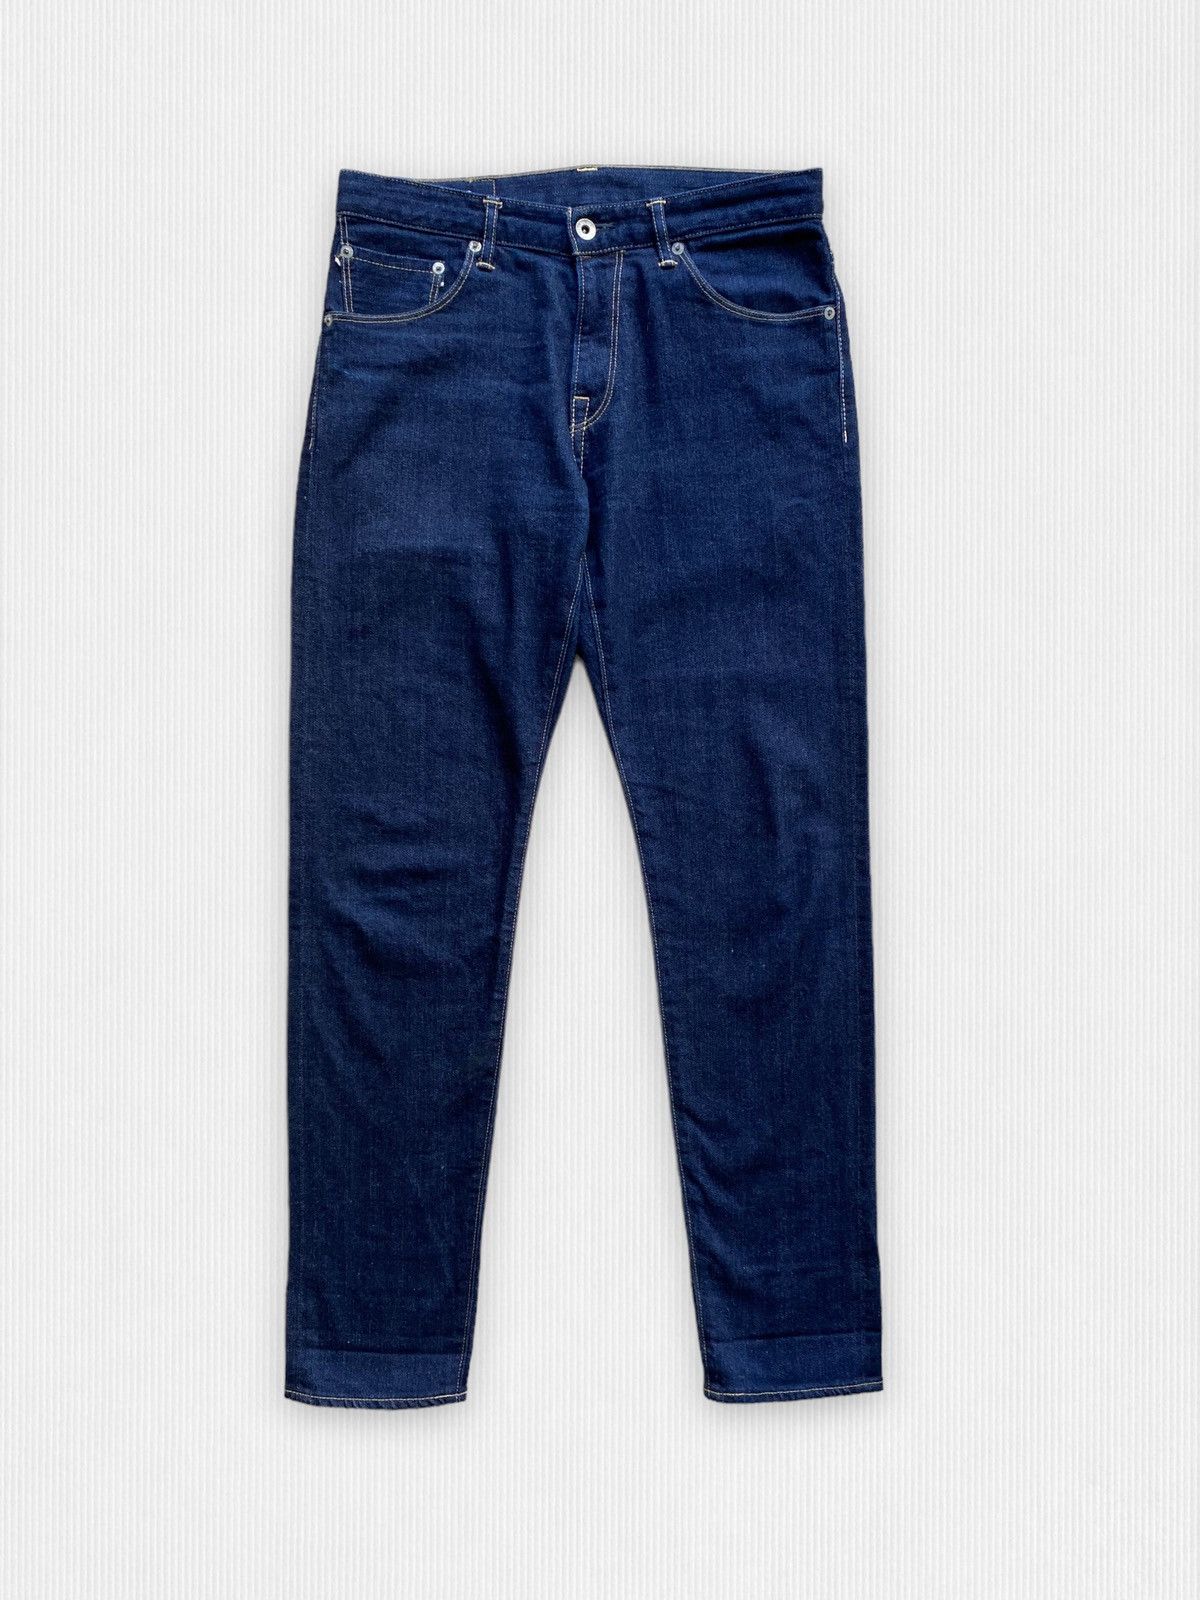 Spellbound Spellbound Selvedge 40-171C Denim Japanese Jeans | Grailed